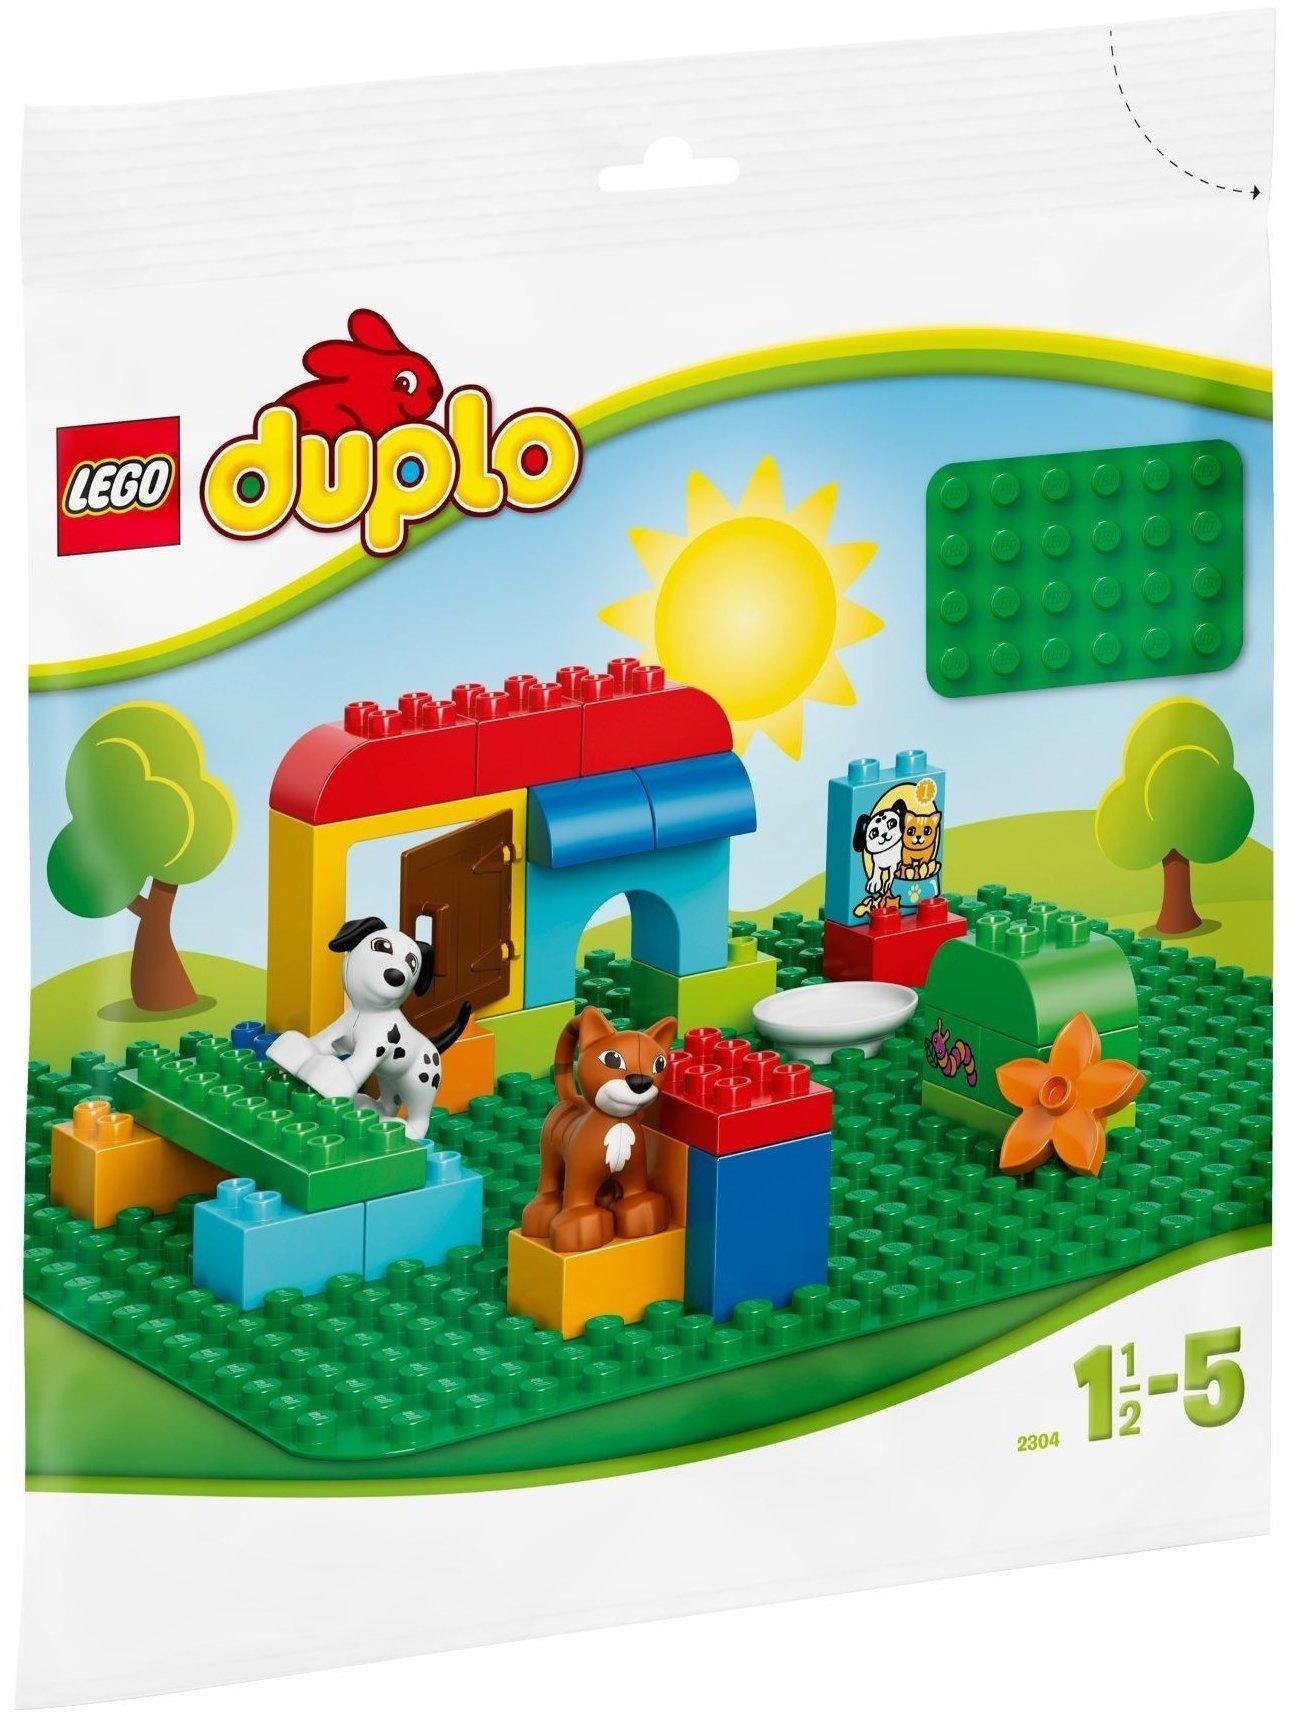 LEGO Duplo - Große Bauplatte grün (2304) Test ❤️ Black Friday Deals TOP  Angebote ab 8,99 € (Oktober 2022)